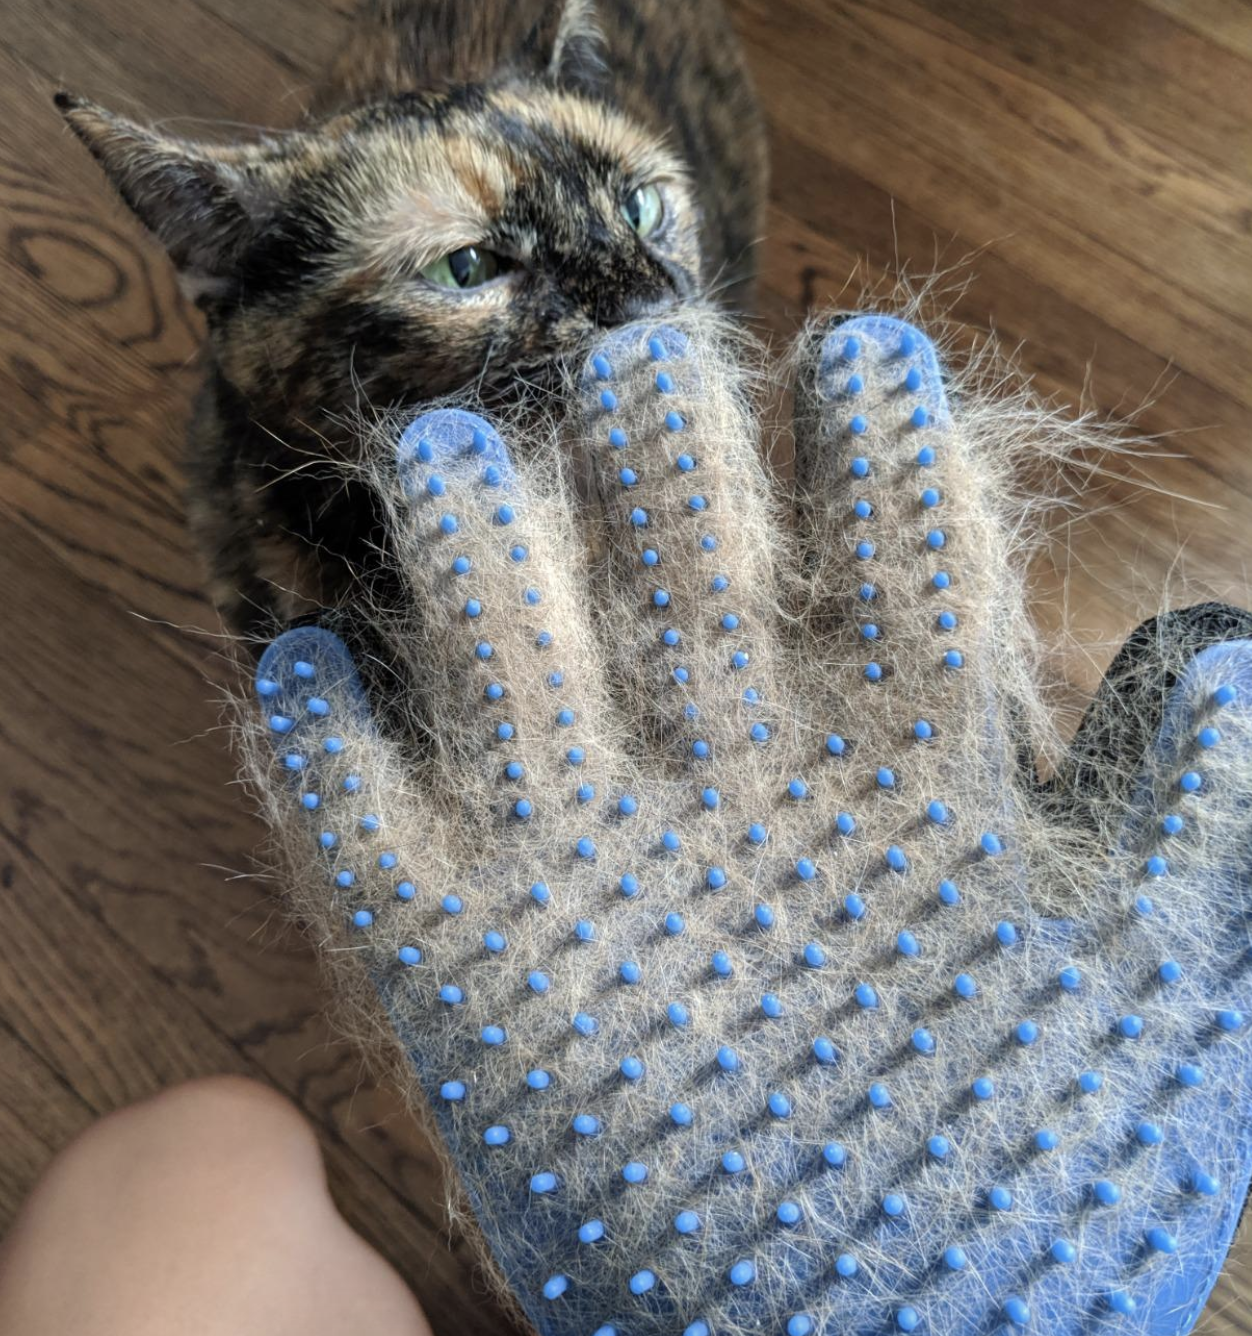 glove covered in cat fur 